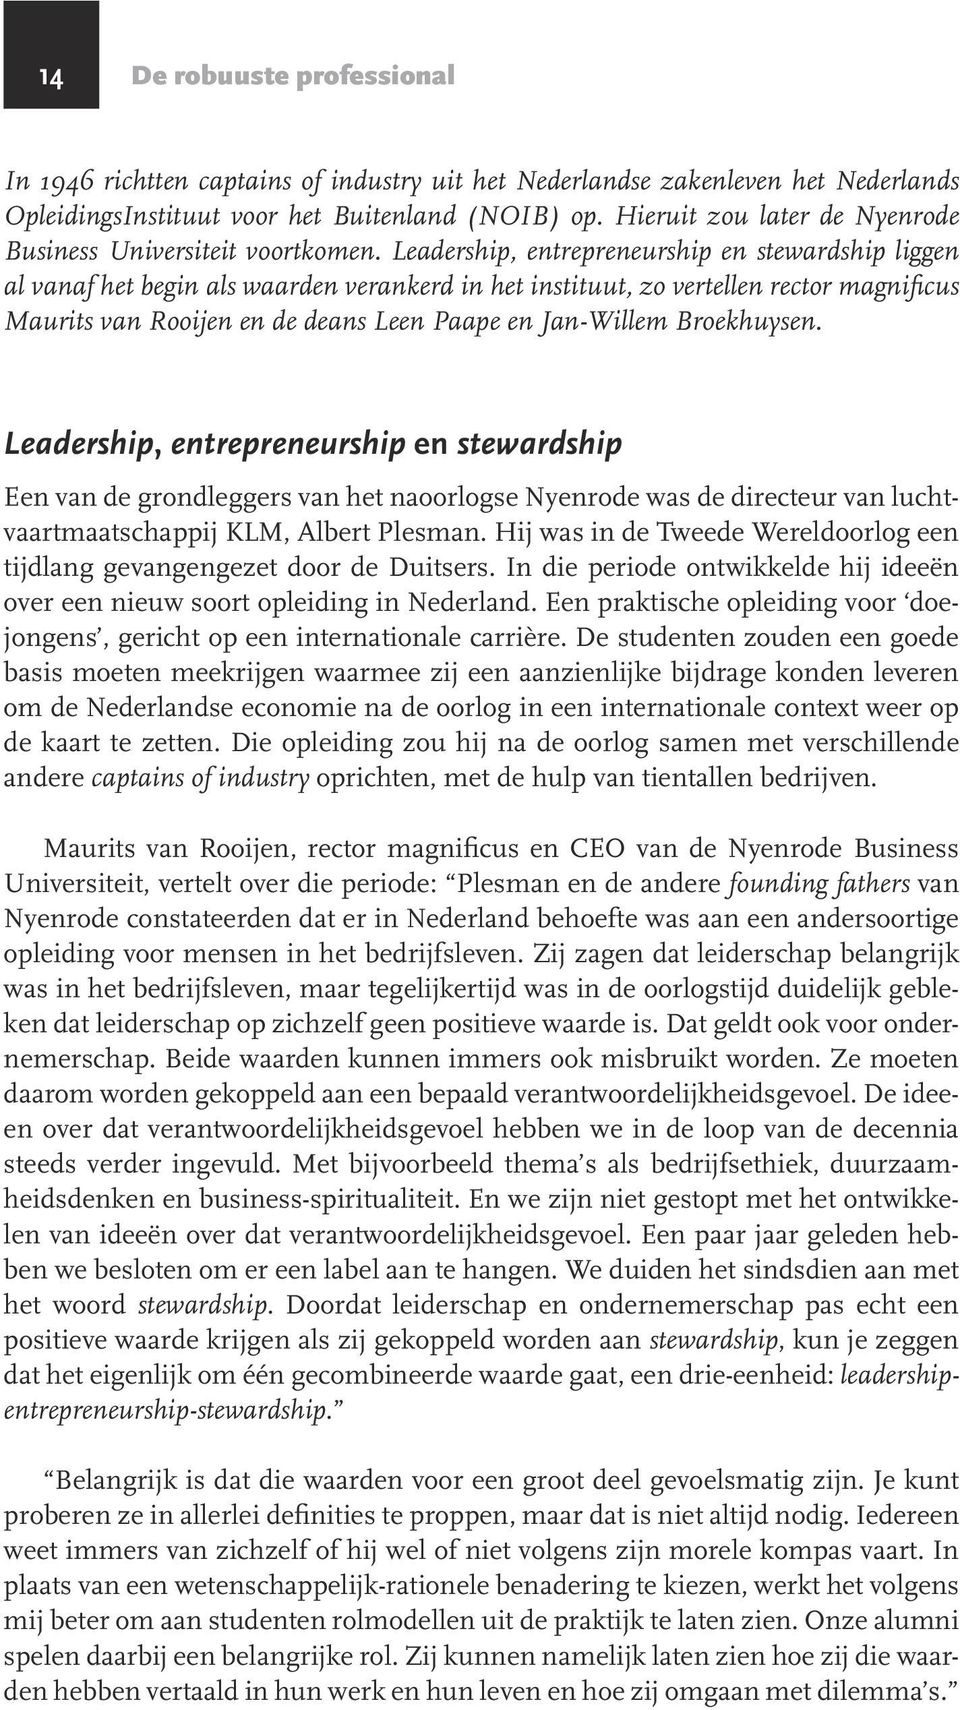 Leadership, entrepreneurship en stewardship liggen al vanaf het begin als waarden verankerd in het instituut, zo vertellen rector magnificus Maurits van Rooijen en de deans Leen Paape en Jan-Willem